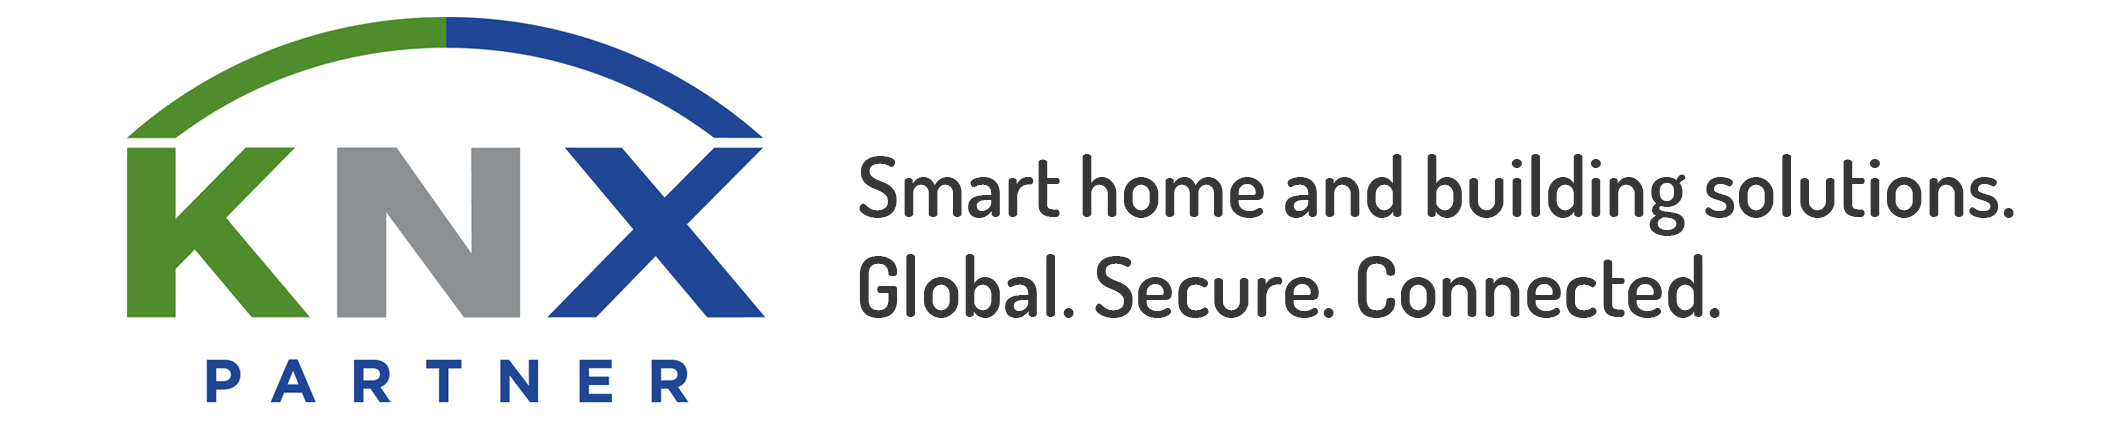 SMARTBUILDING - SMARTHOME | KNX Partner Logo